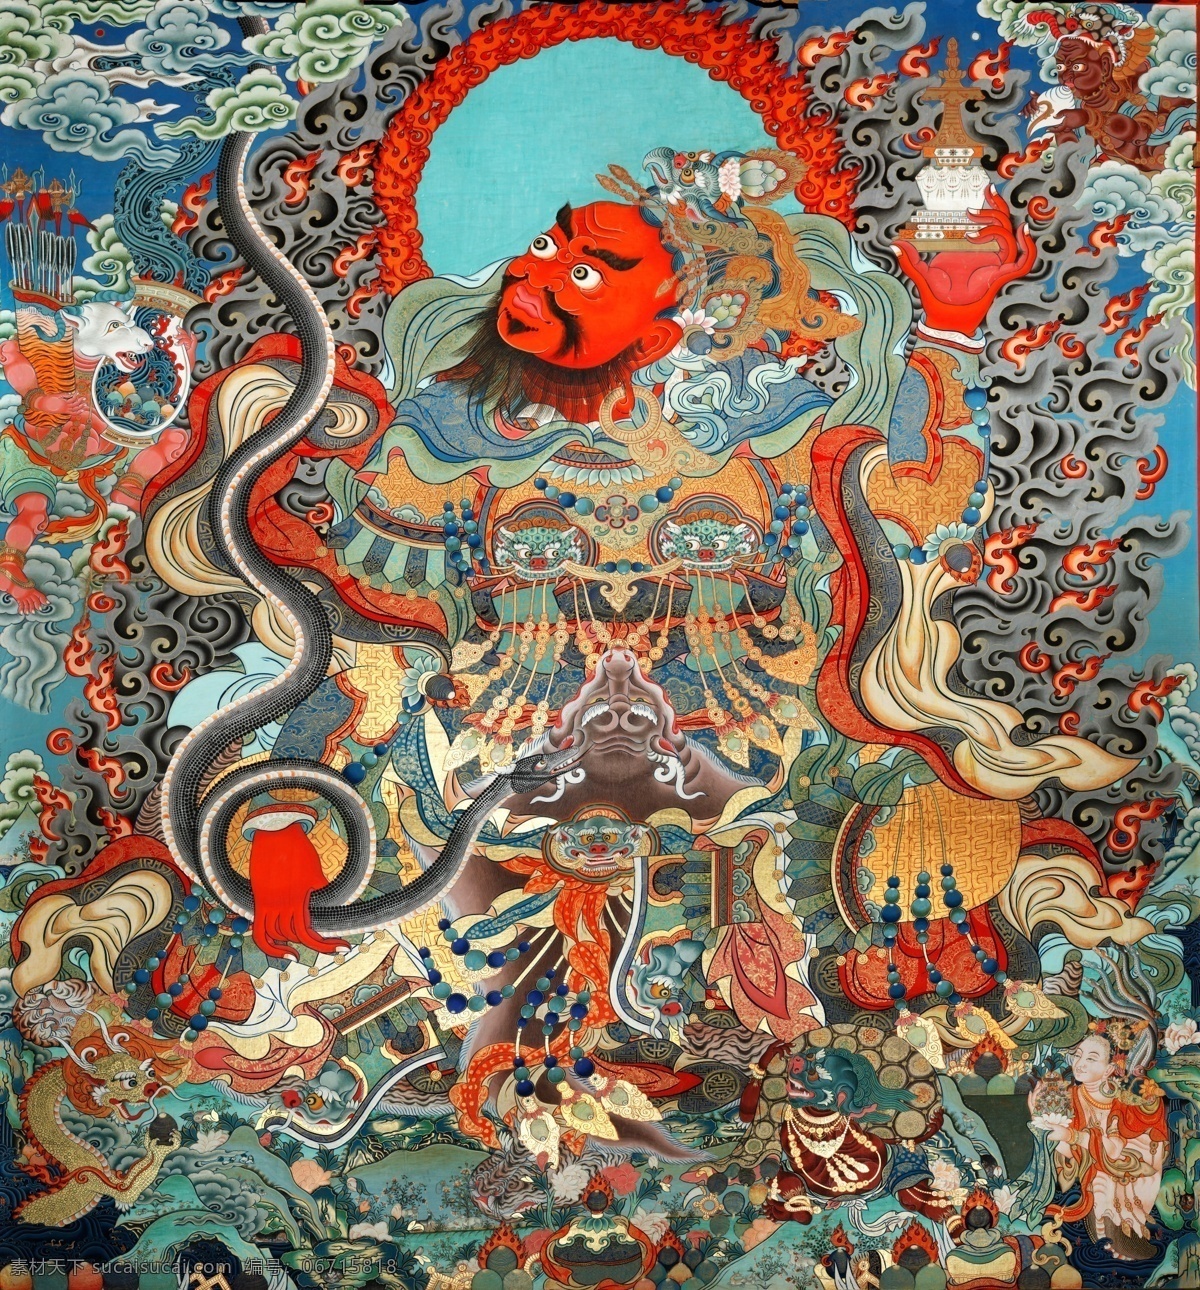 佛图片 唐卡 神像 莲花 宗教信仰 文化 观音 神话 宗教 唐卡广告 唐卡海报 藏族文化 藏经 文化艺术 绘画书法